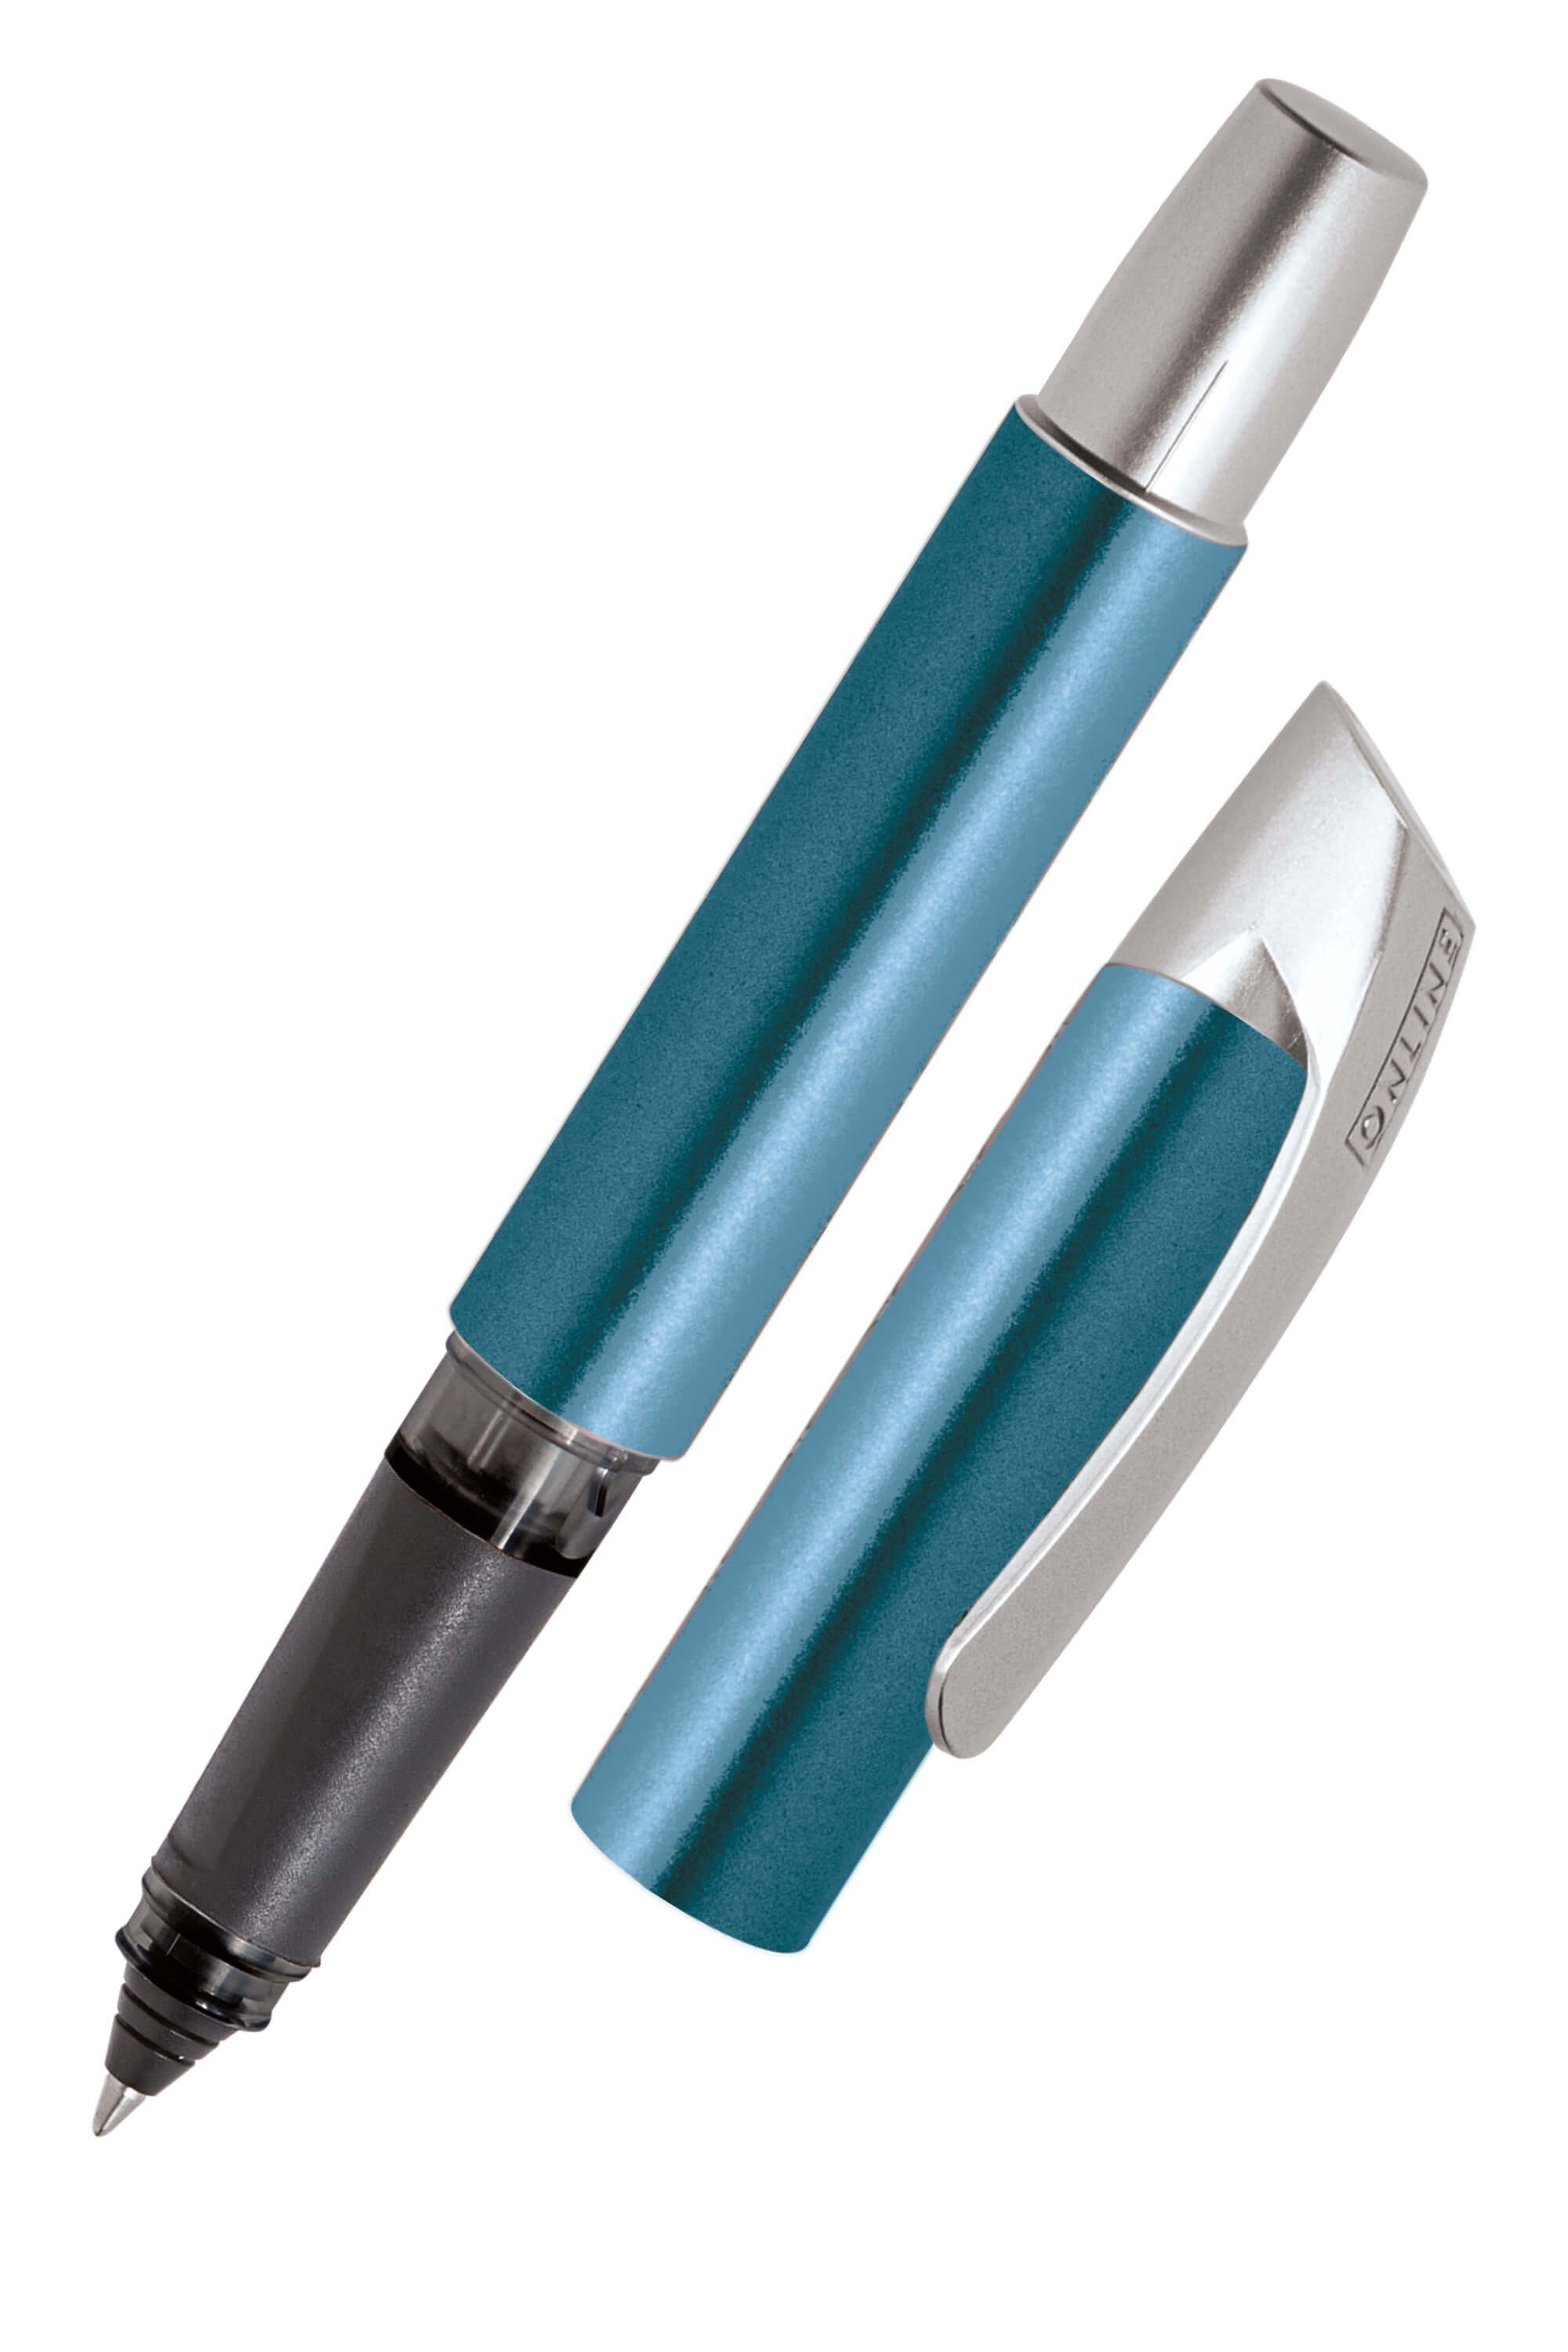 Online Pen Tintenroller Campus Rollerball, ergonomisch, ideal für die Schule, hergestellt in Deutschland Petrol